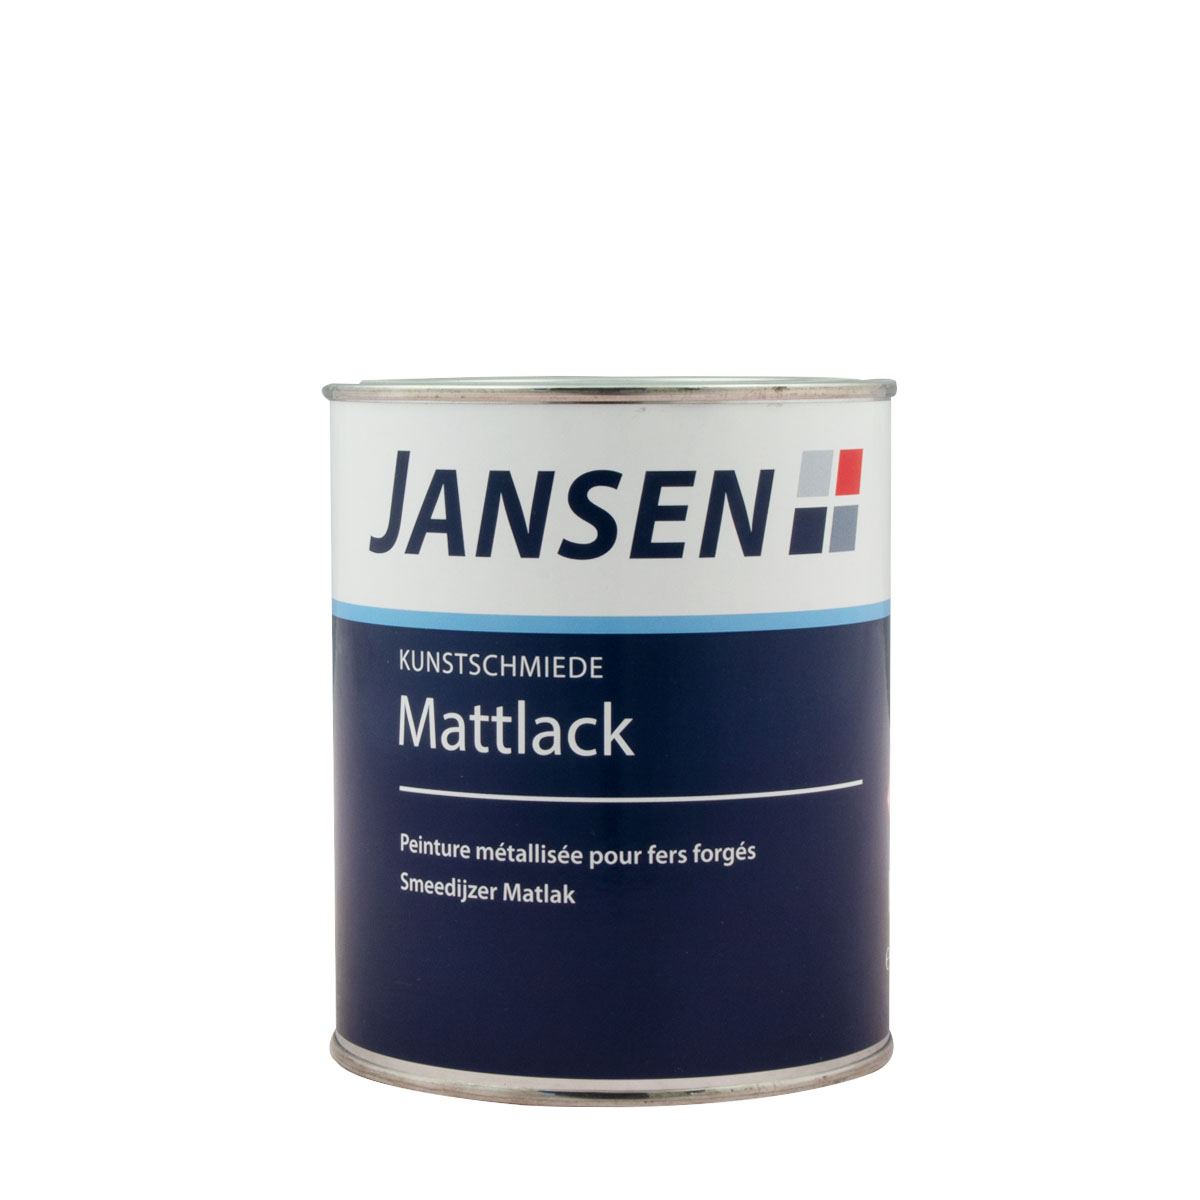 Jansen_mattlack_gross